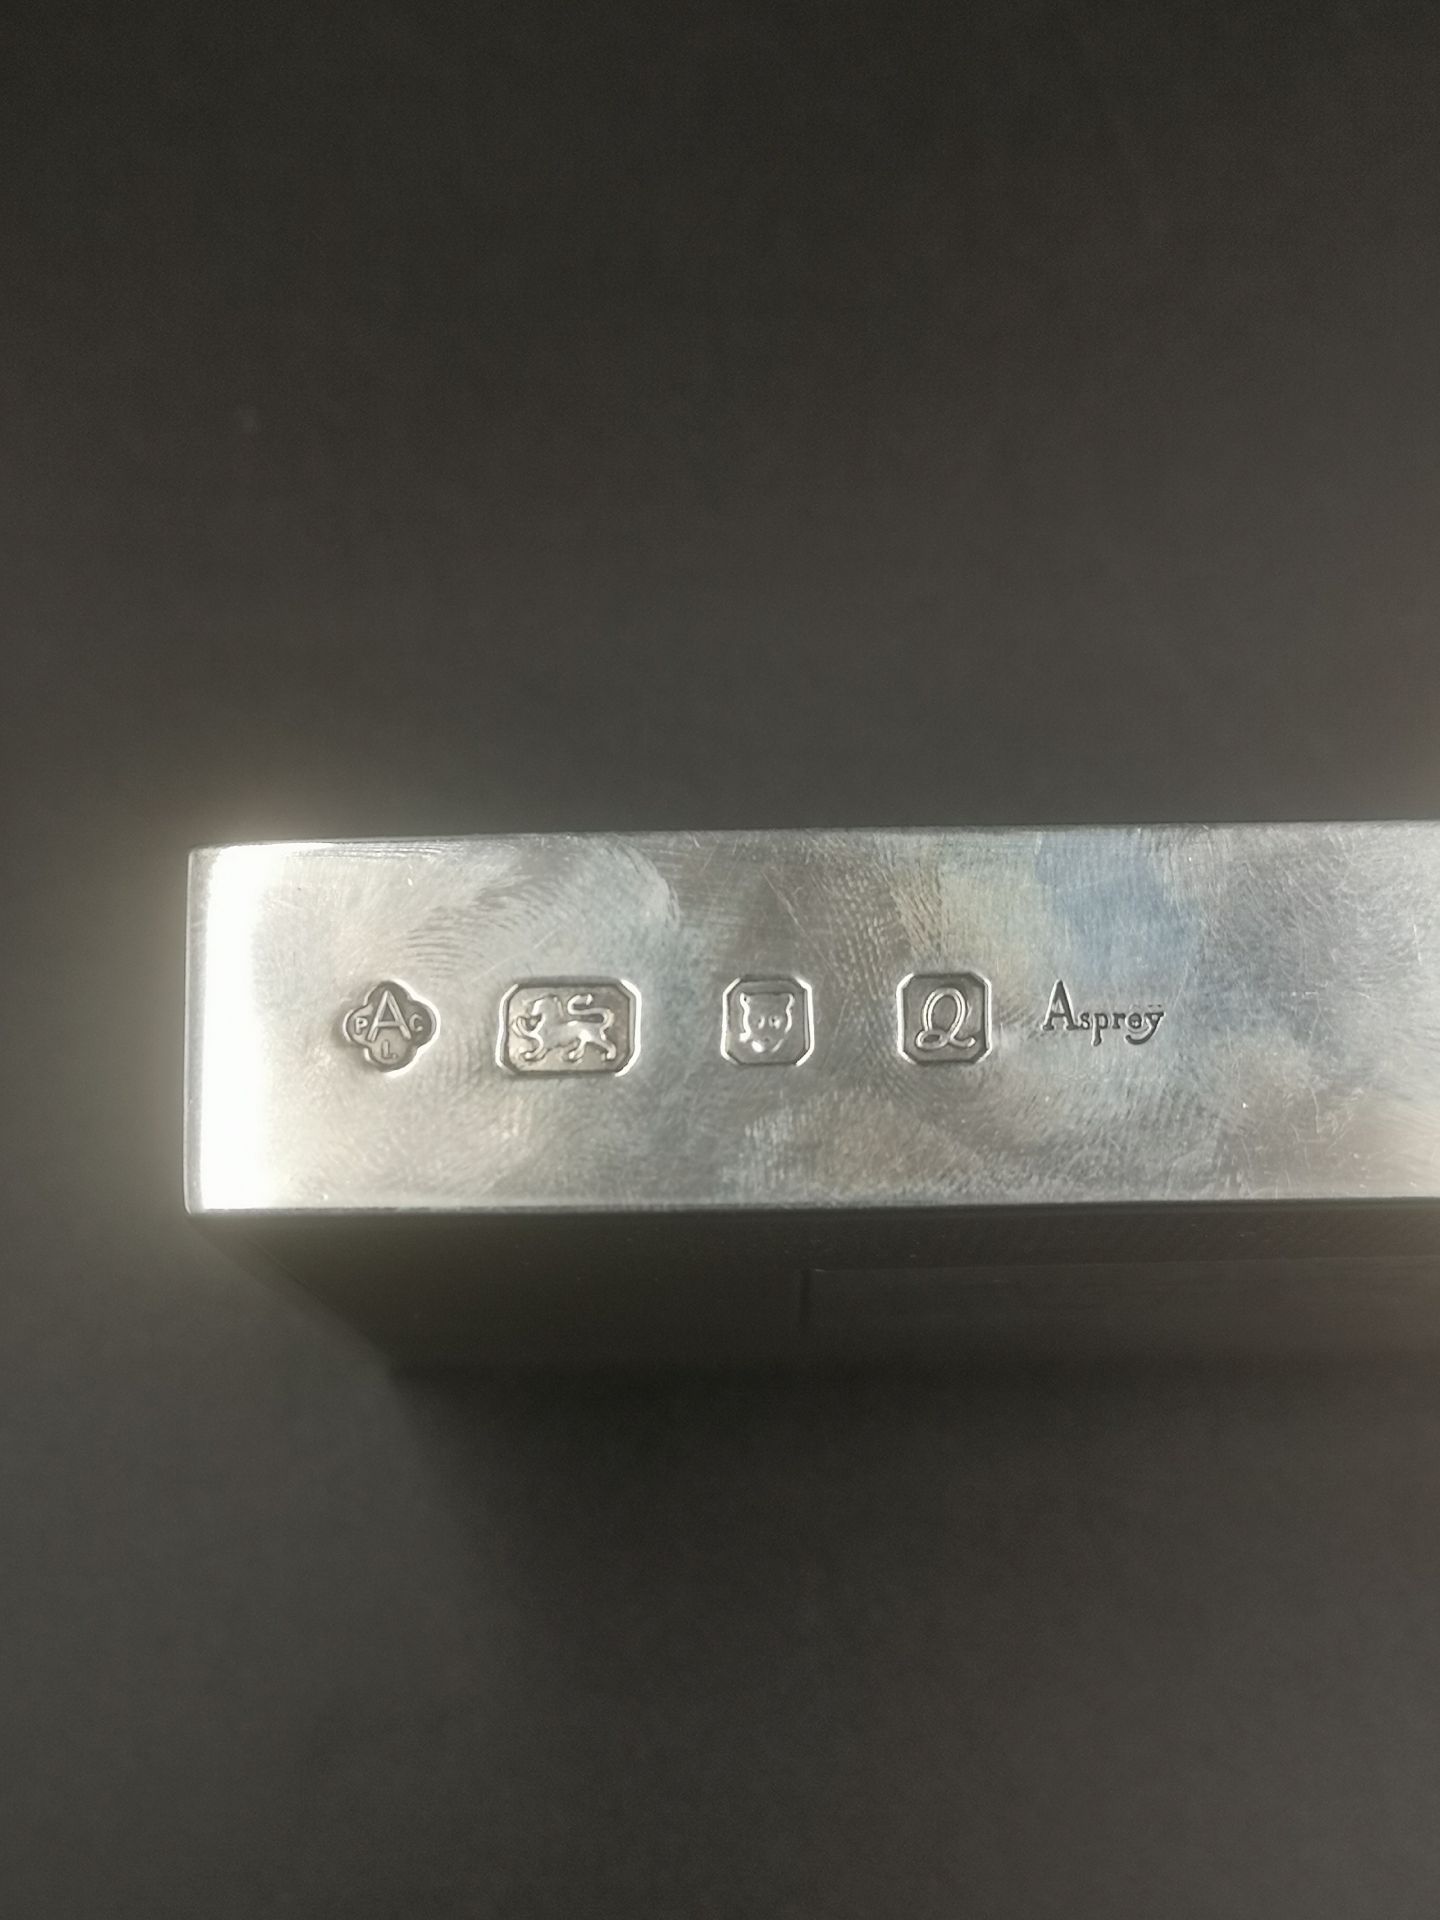 Asprey silver matchbox holder with gold detailing - Bild 4 aus 5